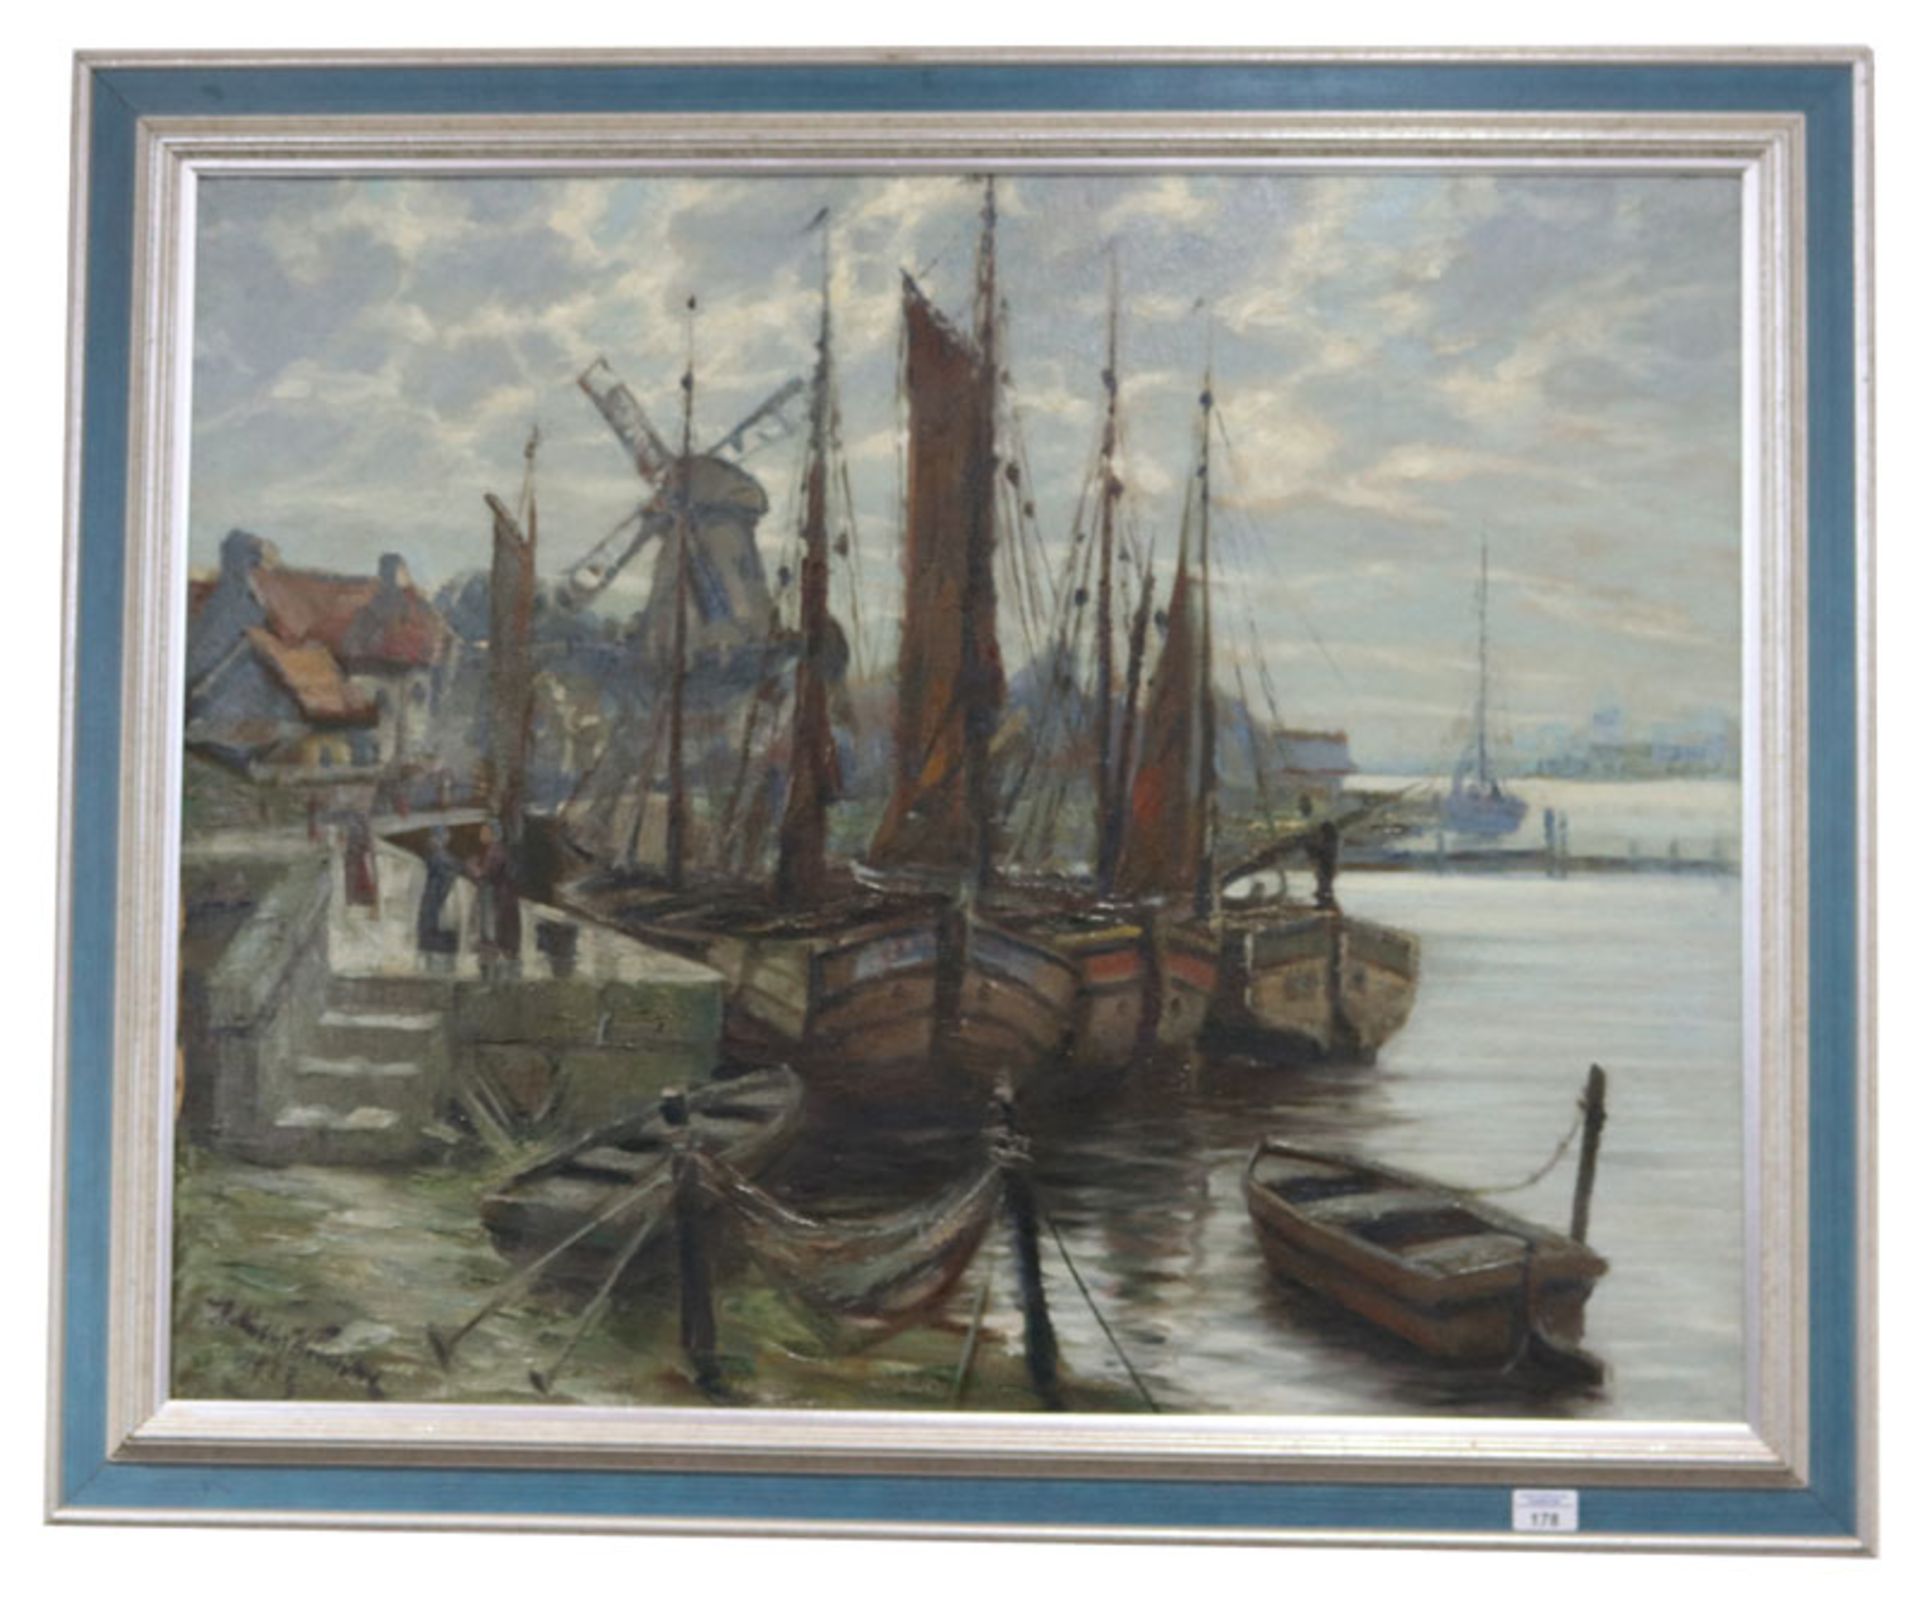 Gemälde ÖL/LW 'Holländische Hafen-Szenerie', signiert H. Müller-Wünsche 1927, Heinrich Hermann Mülle